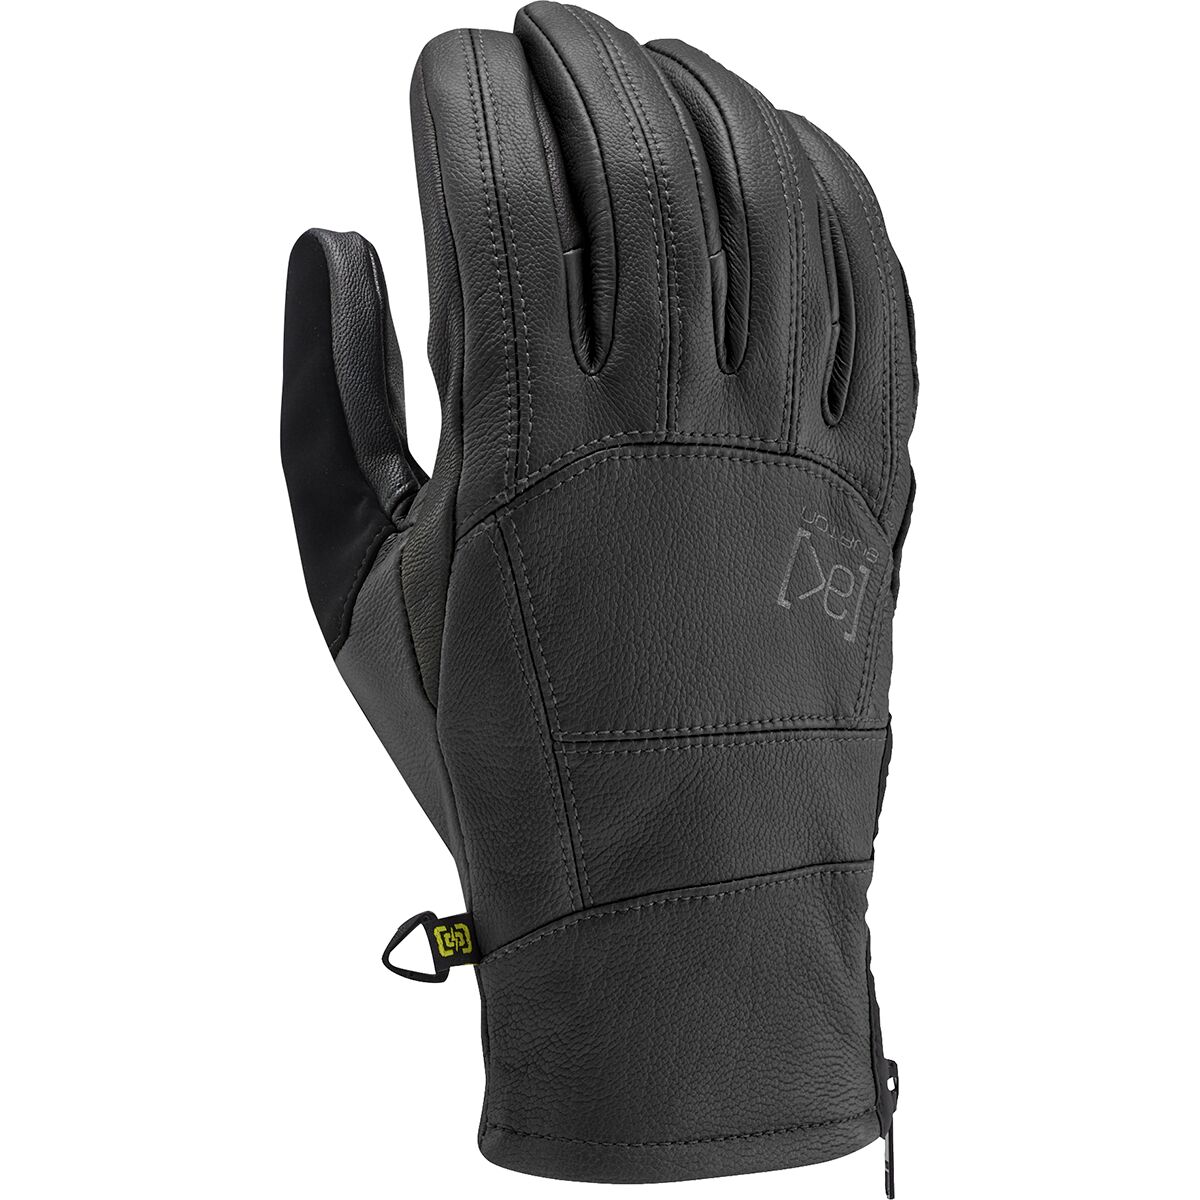 Burton AK Leather Tech Glove - Men's True Black